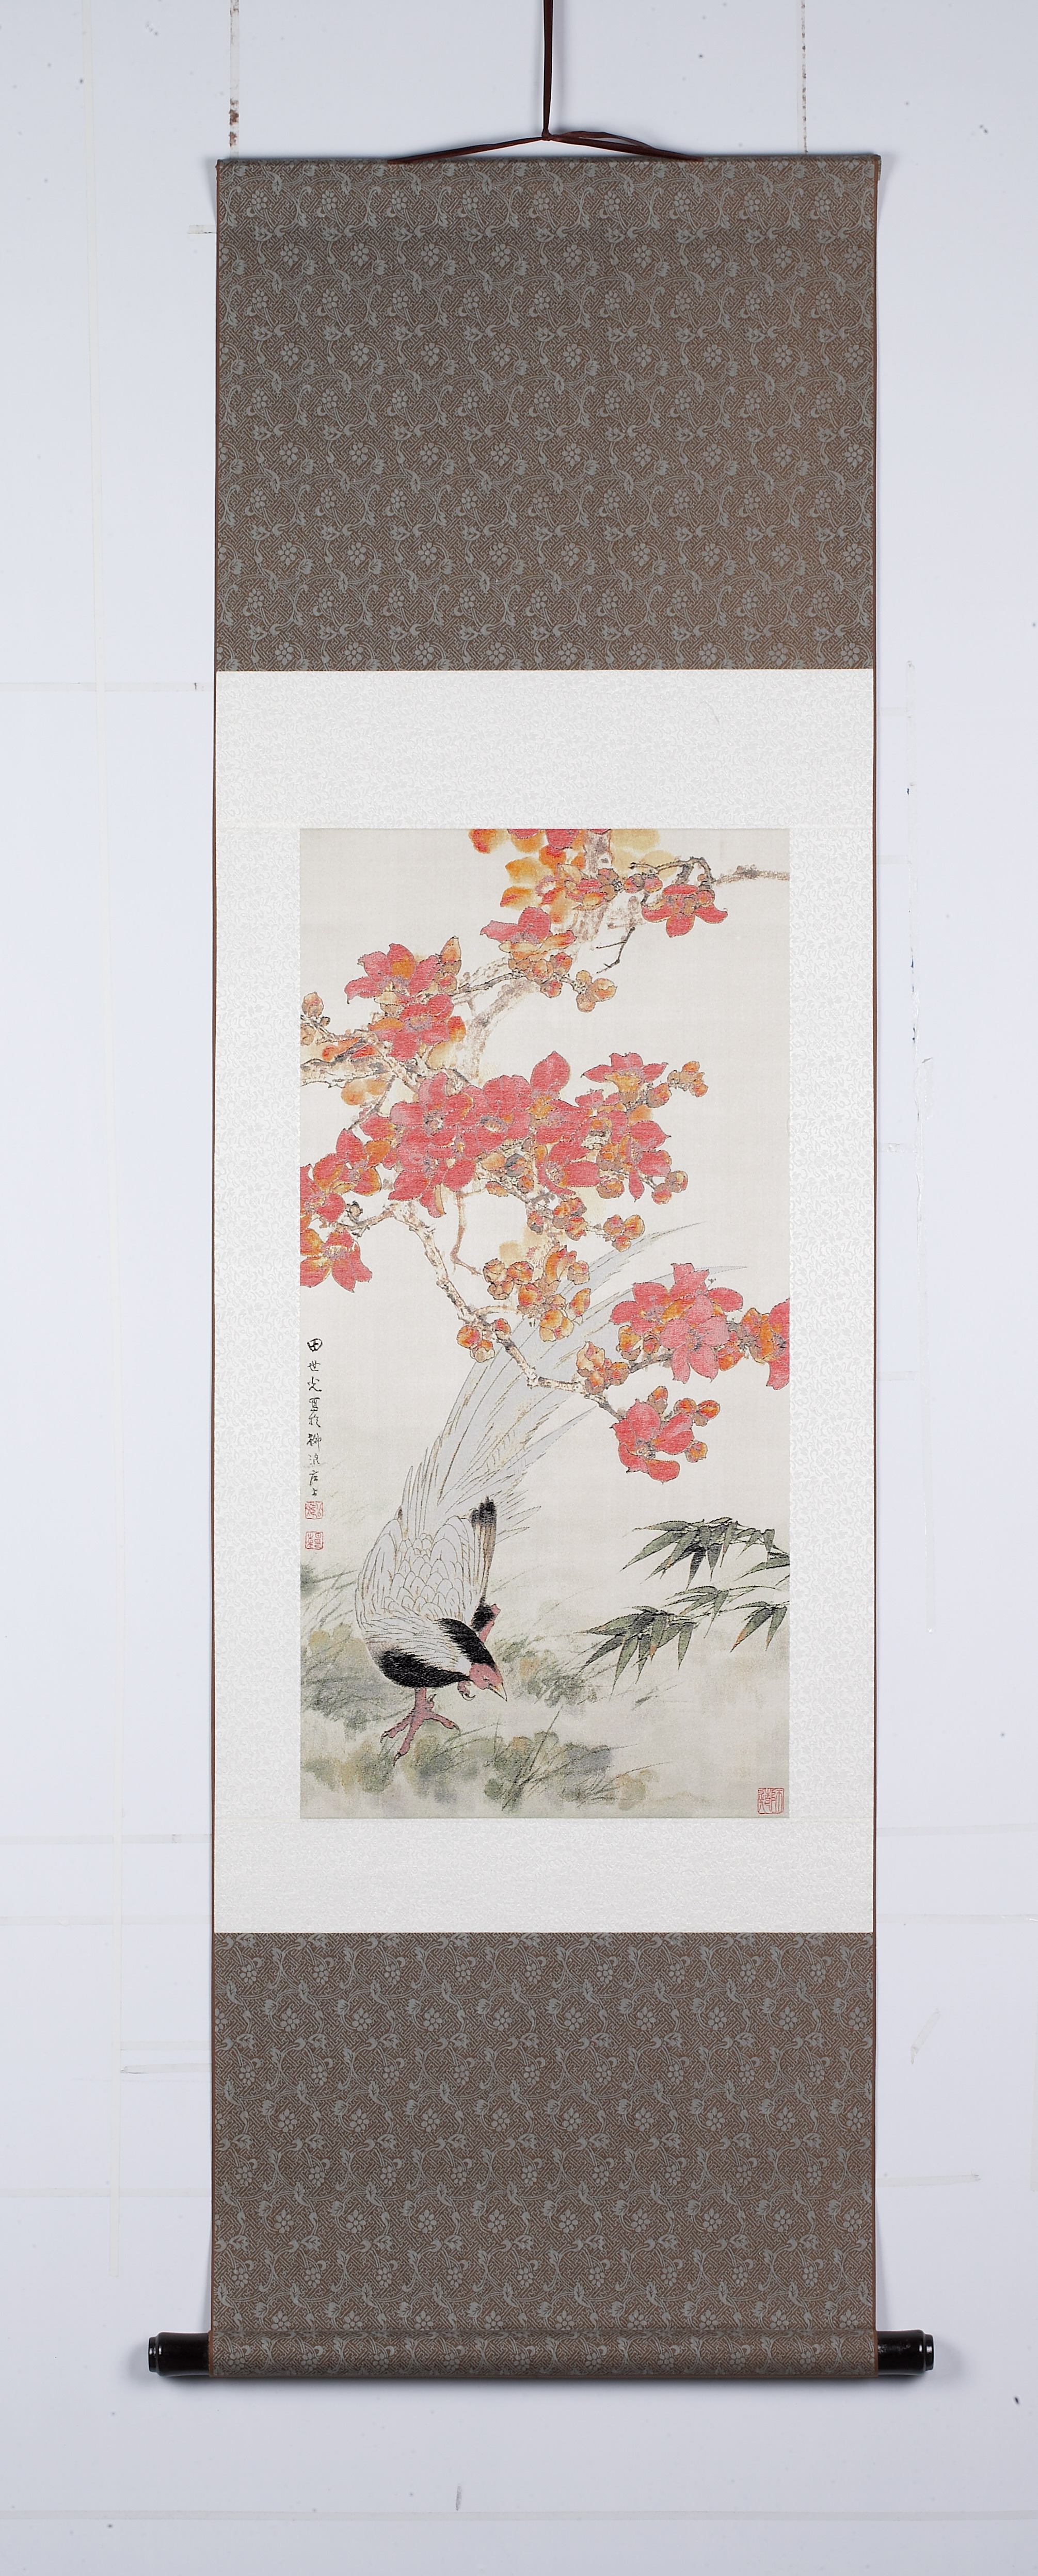 木棉白鹂 丝绸画 真丝织锦卷轴画 文化外事礼品